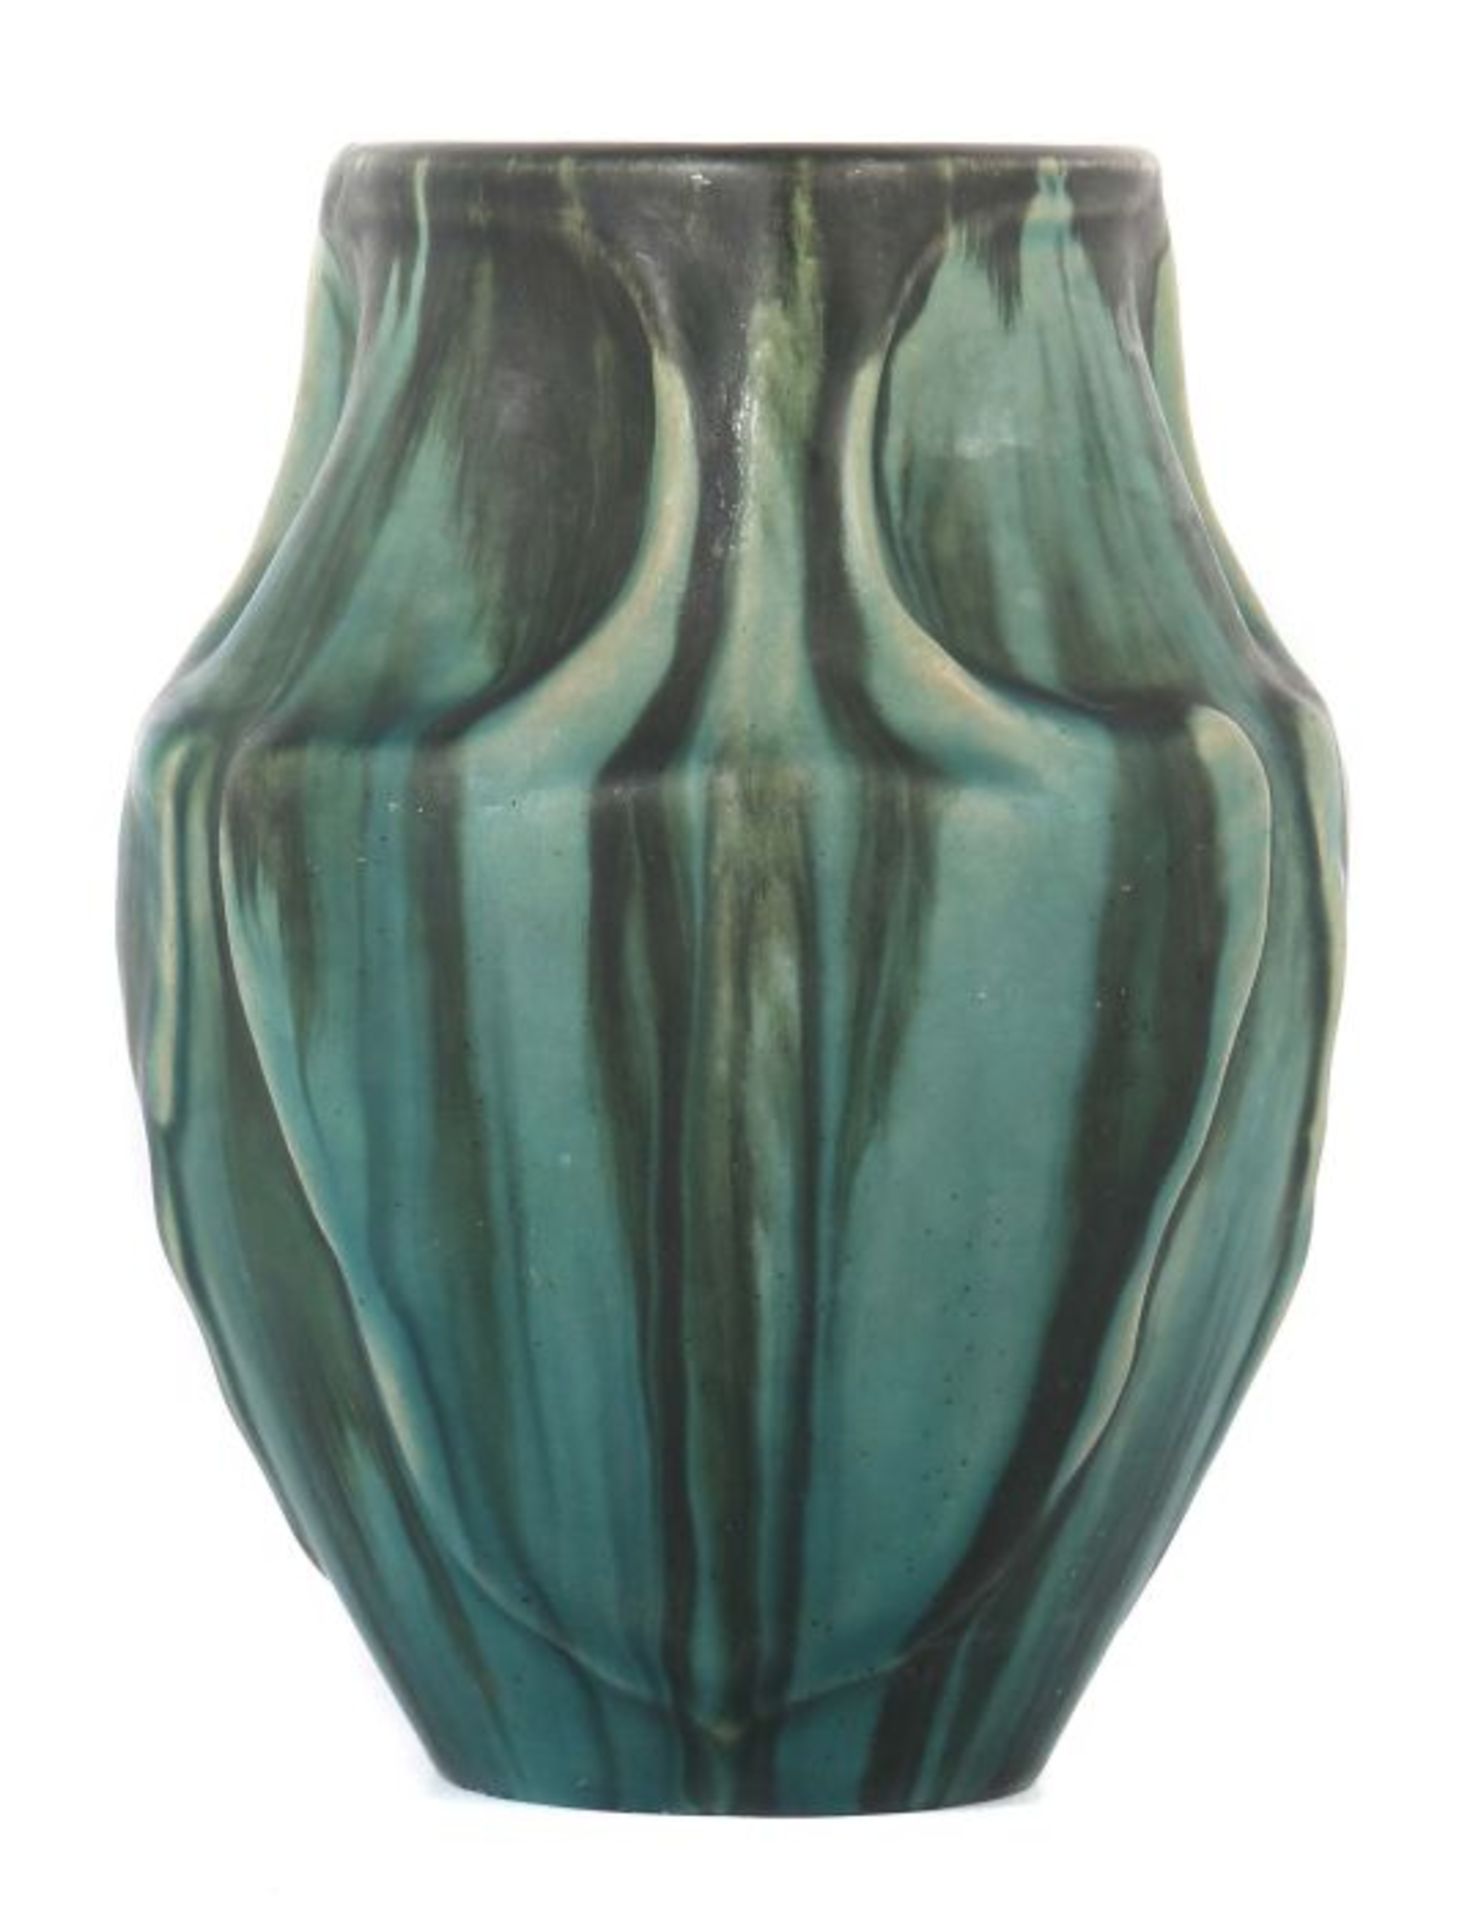 Baudin, Eugène Vierzon 1853 - 1918 Granges-sur-Aube. Kleine Vase, beiger Scherben, dreieckige